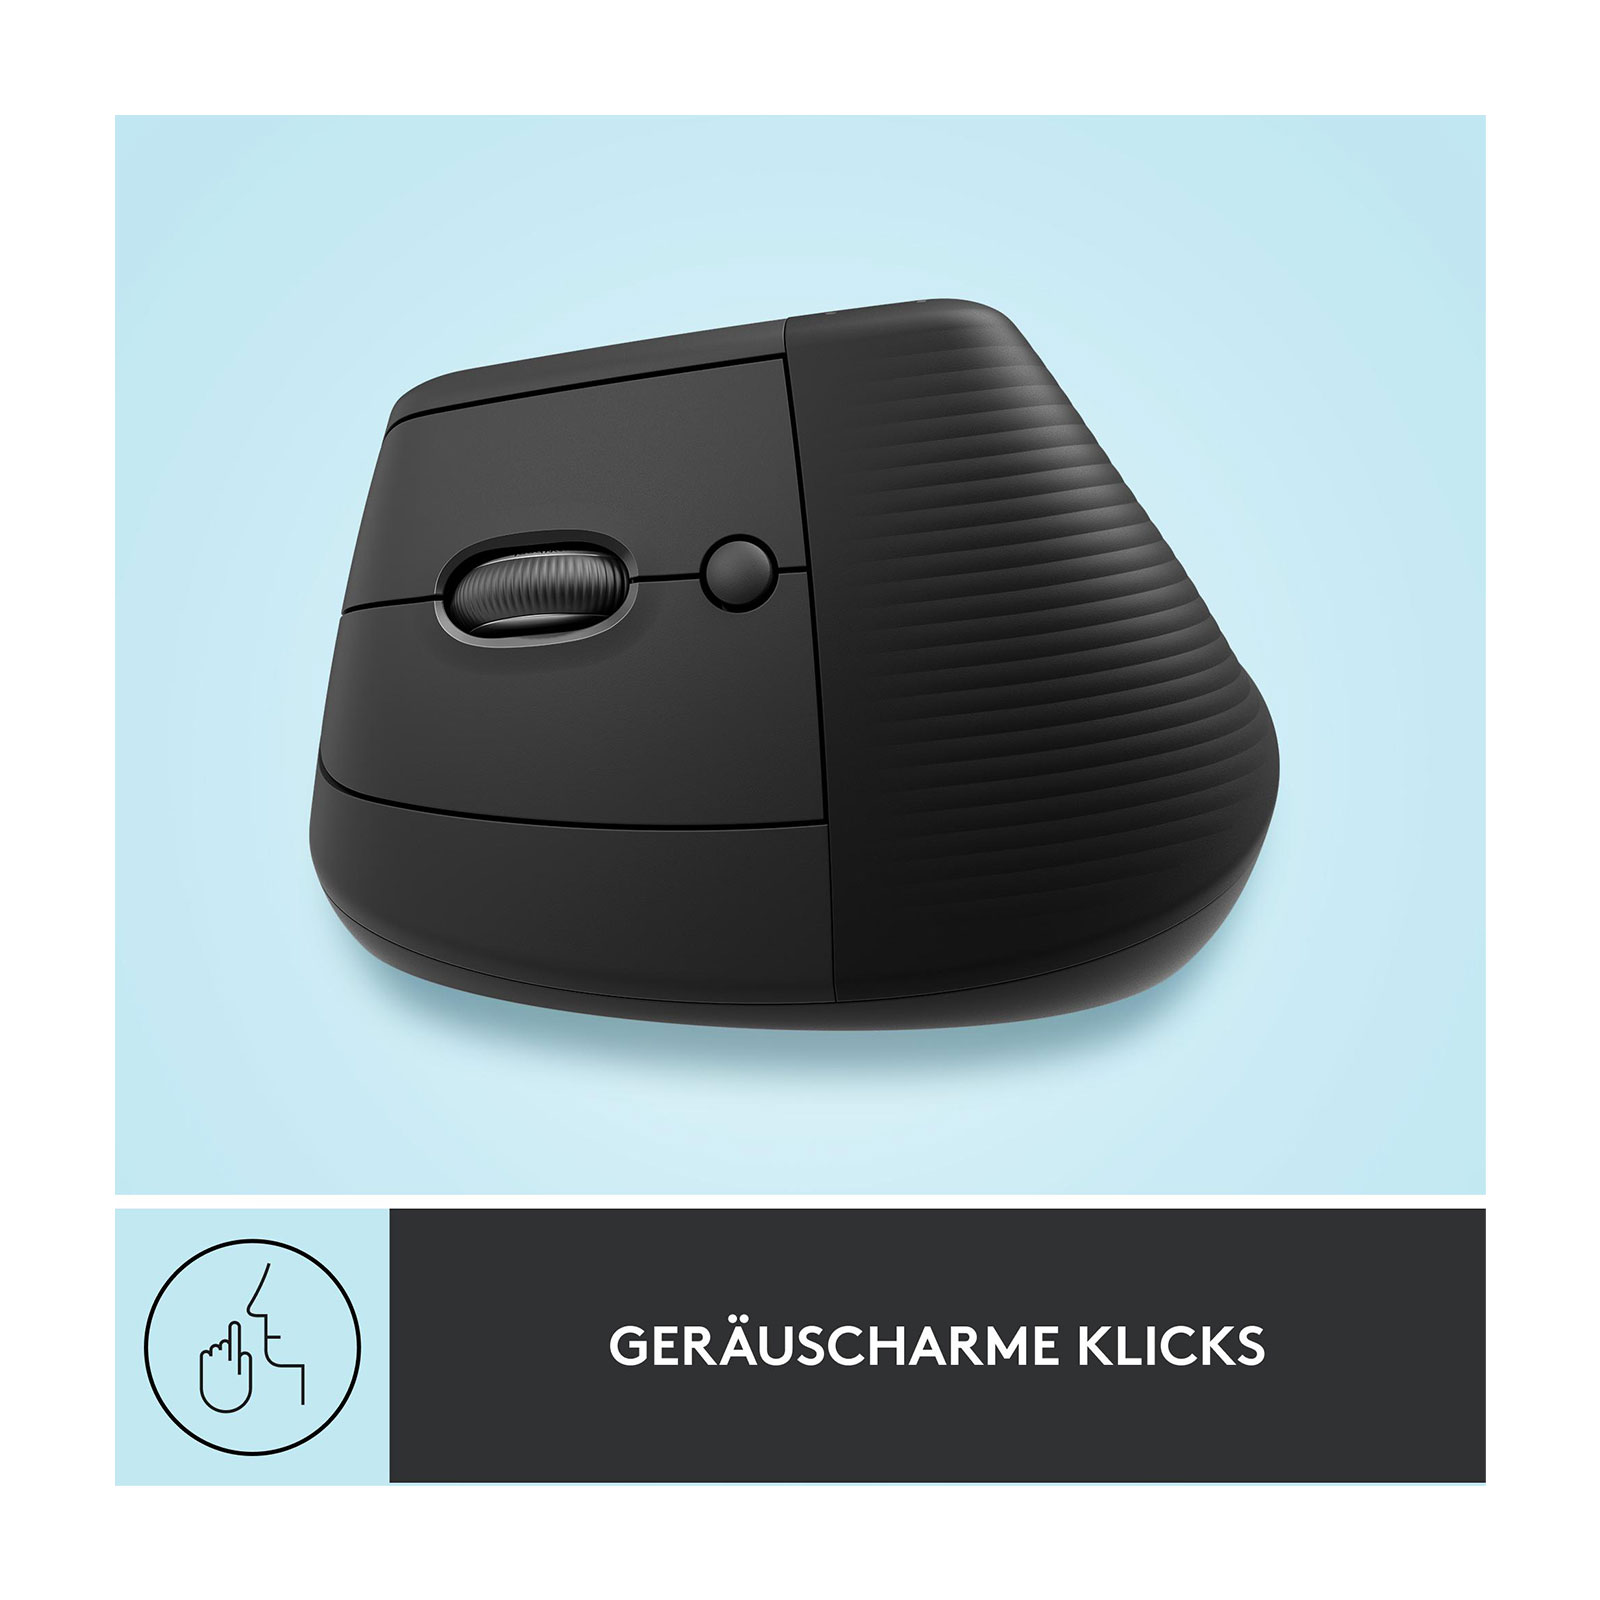 Logitech Lift - linkshändige vertikale ergonomische Maus, Grafit (Bluetooth, kabellos)